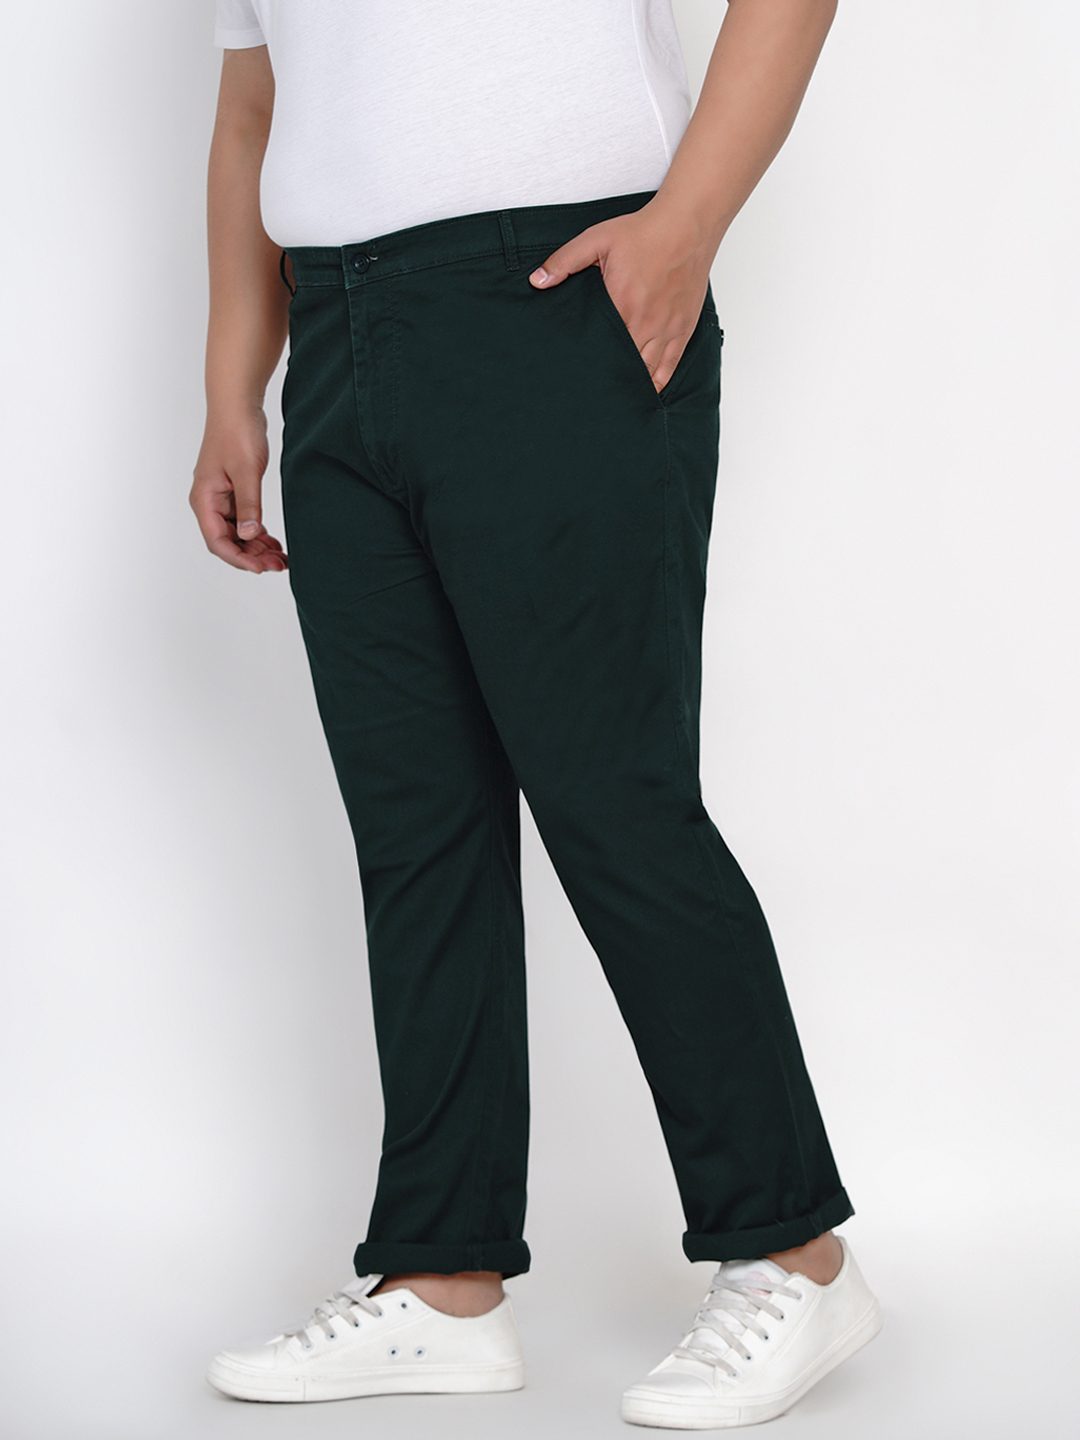 bottomwear/trousers/JPTR2161L/jptr2161l-4.jpg